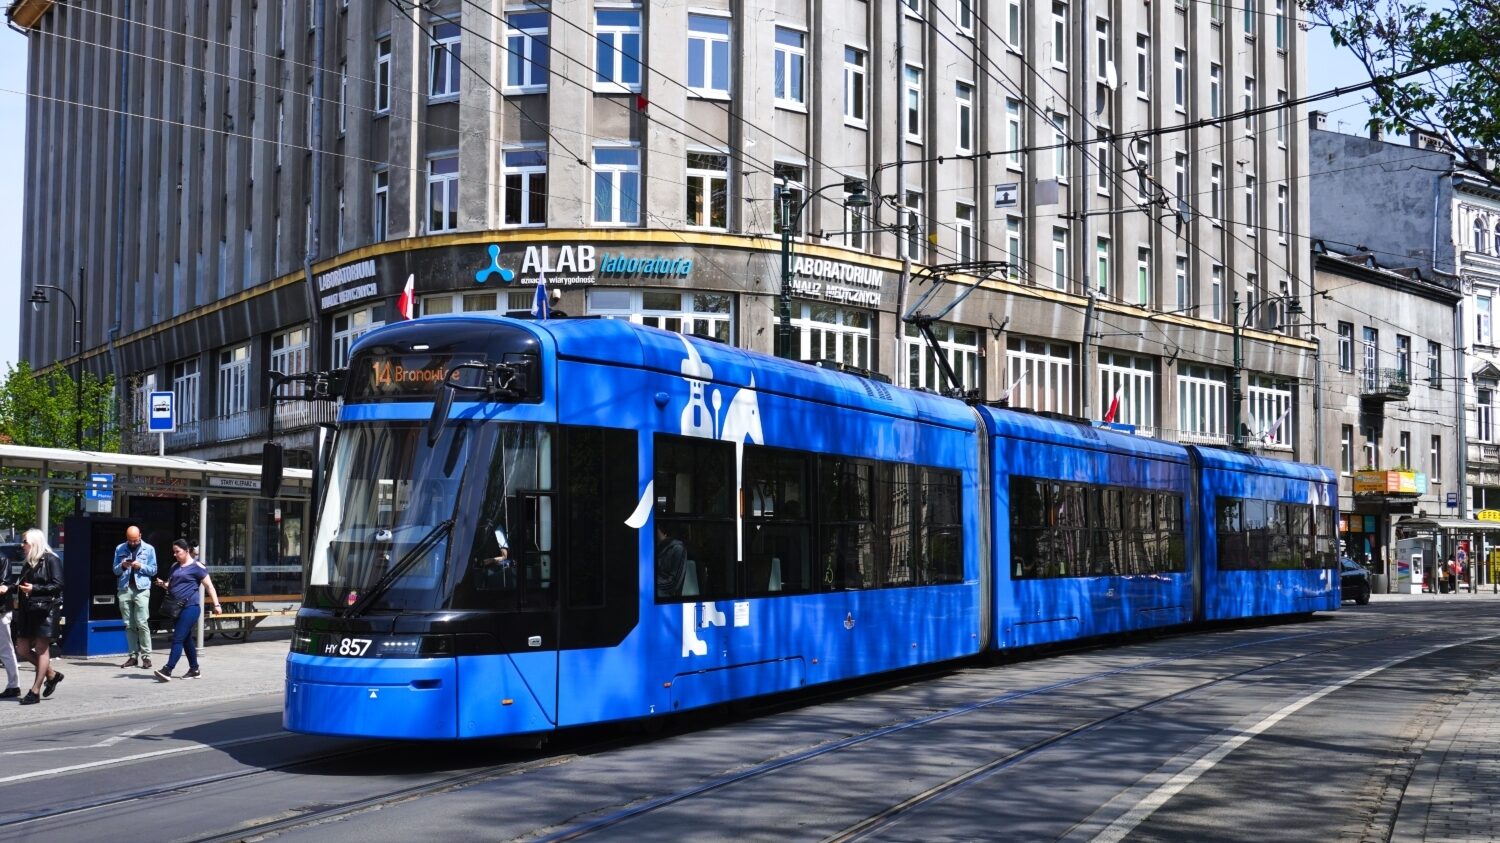 V ulicích Krakova bude  brzy všech 110 vozů Stadler Tango Kraków Lajkonik. Tříčlánkové vozy o délce 33,4 m mají vyvýšenou podlahu nad krajními podvozky. (zdroj: Wikipedia.org, foto: Mach240390)